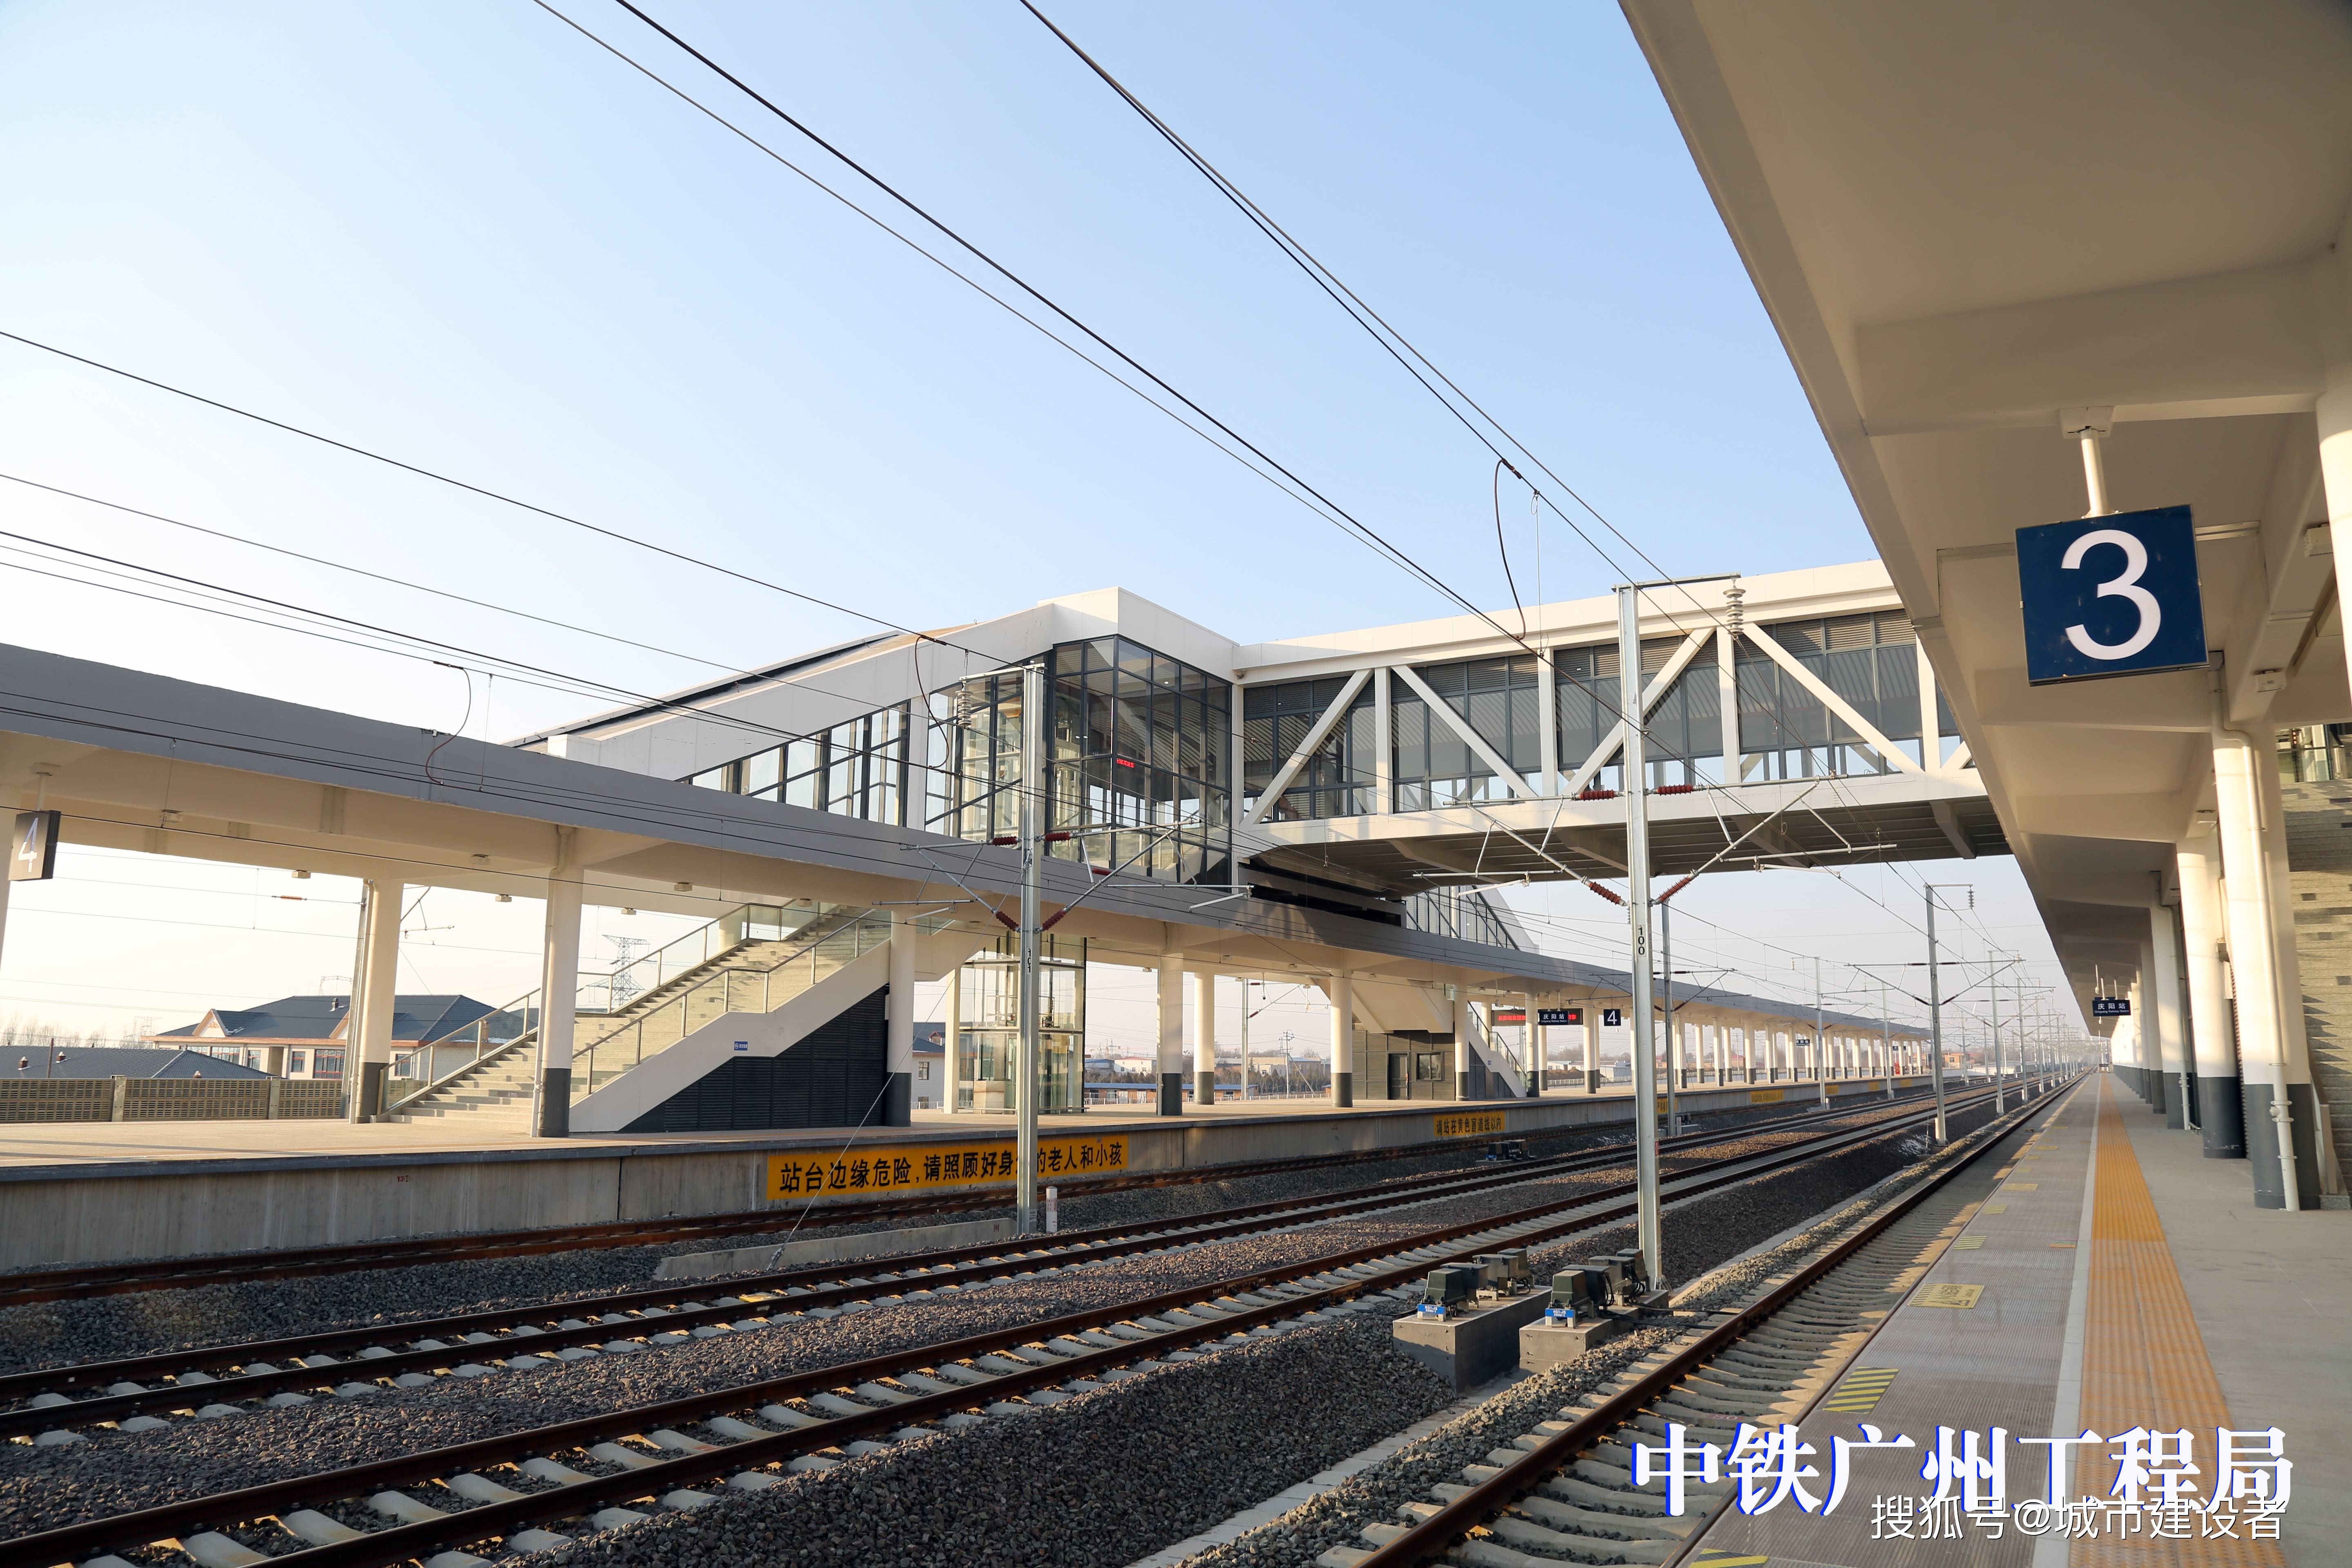 随着银西高铁的开通,庆阳站将是一座现代化,高标准的高速铁路客运站